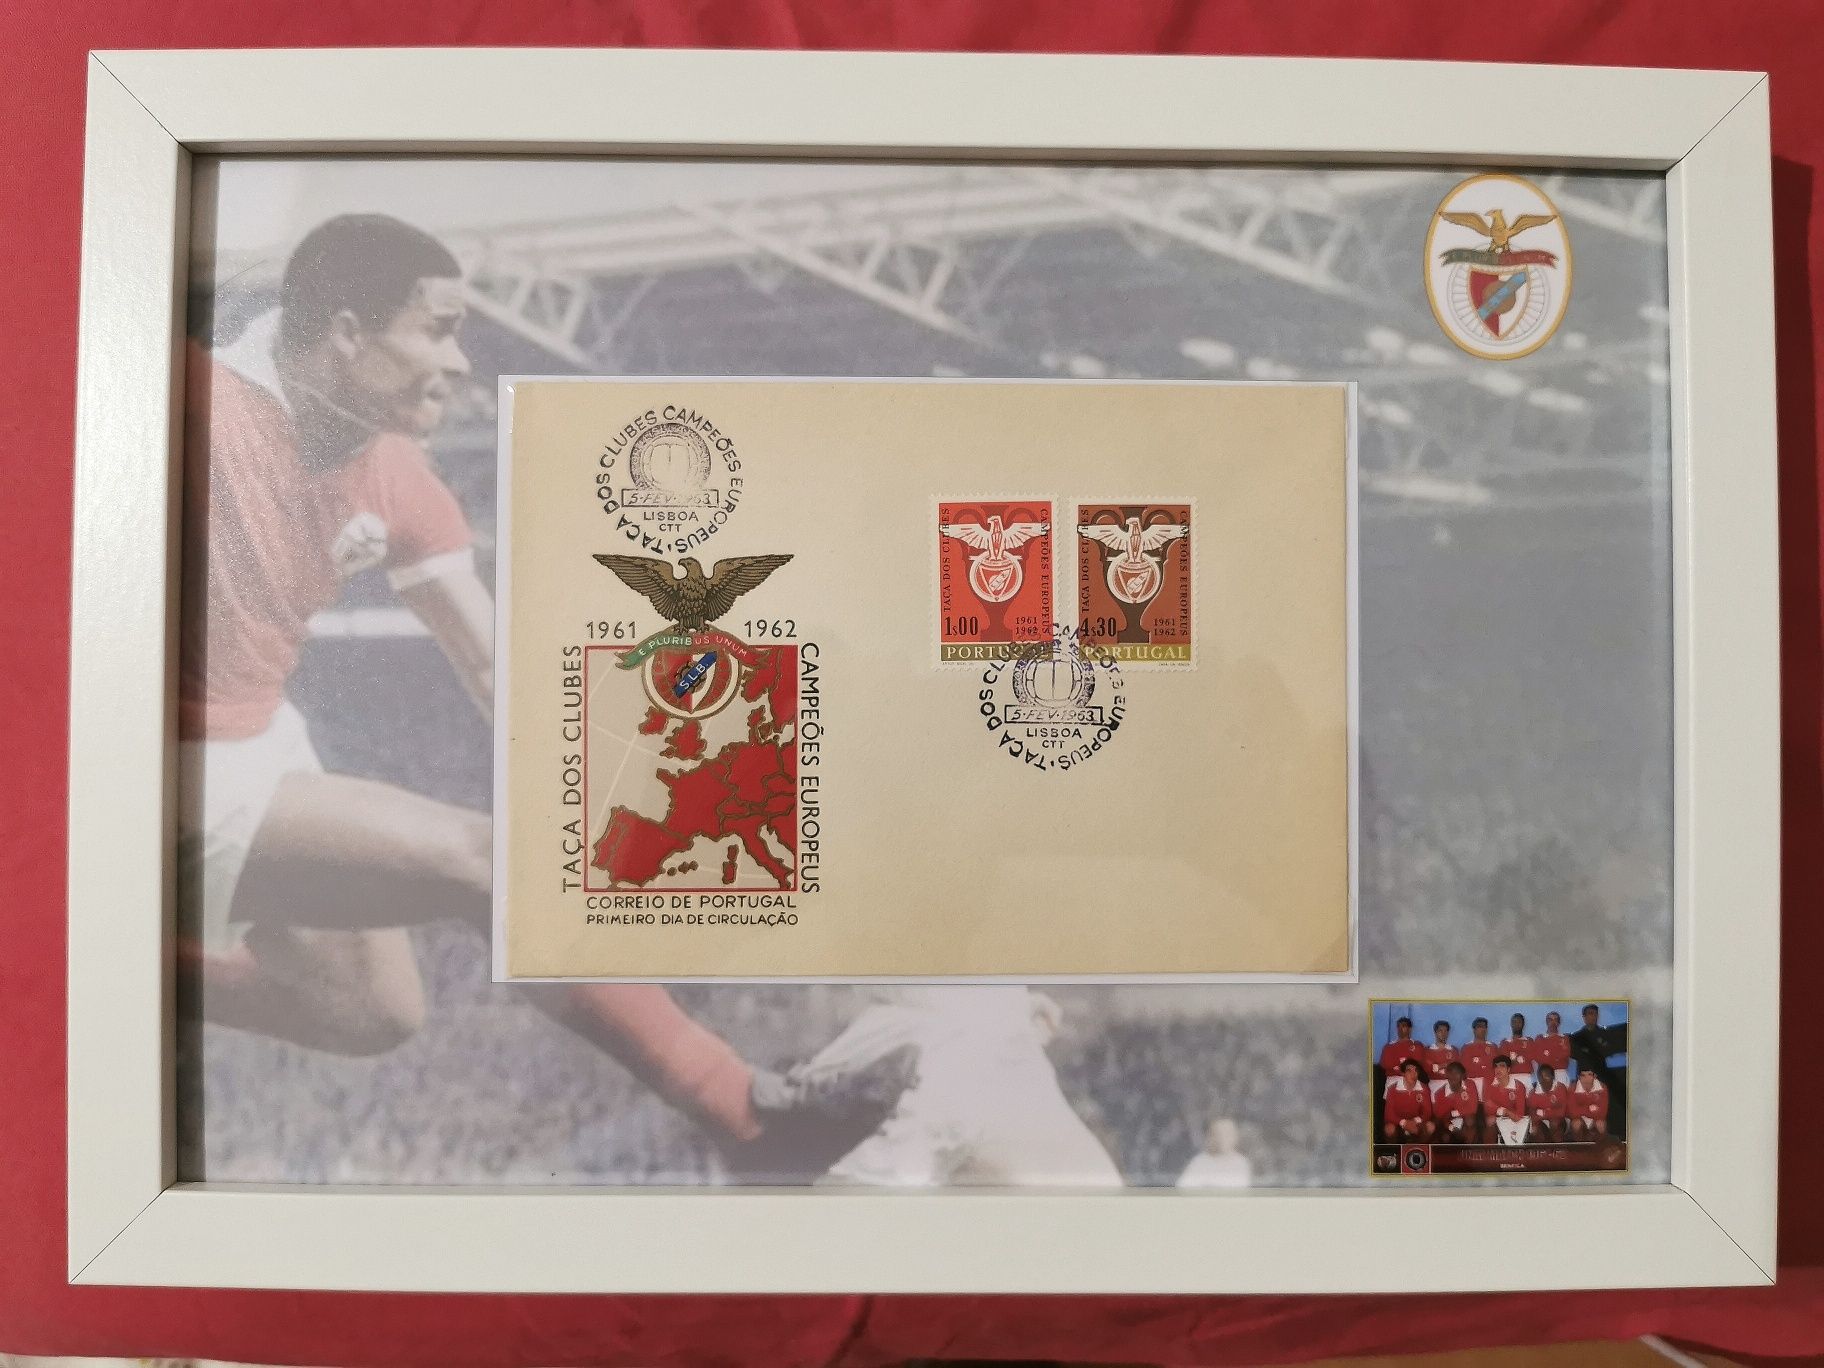 Quadro Benfica - selos Benfica campeão europeu 61-62